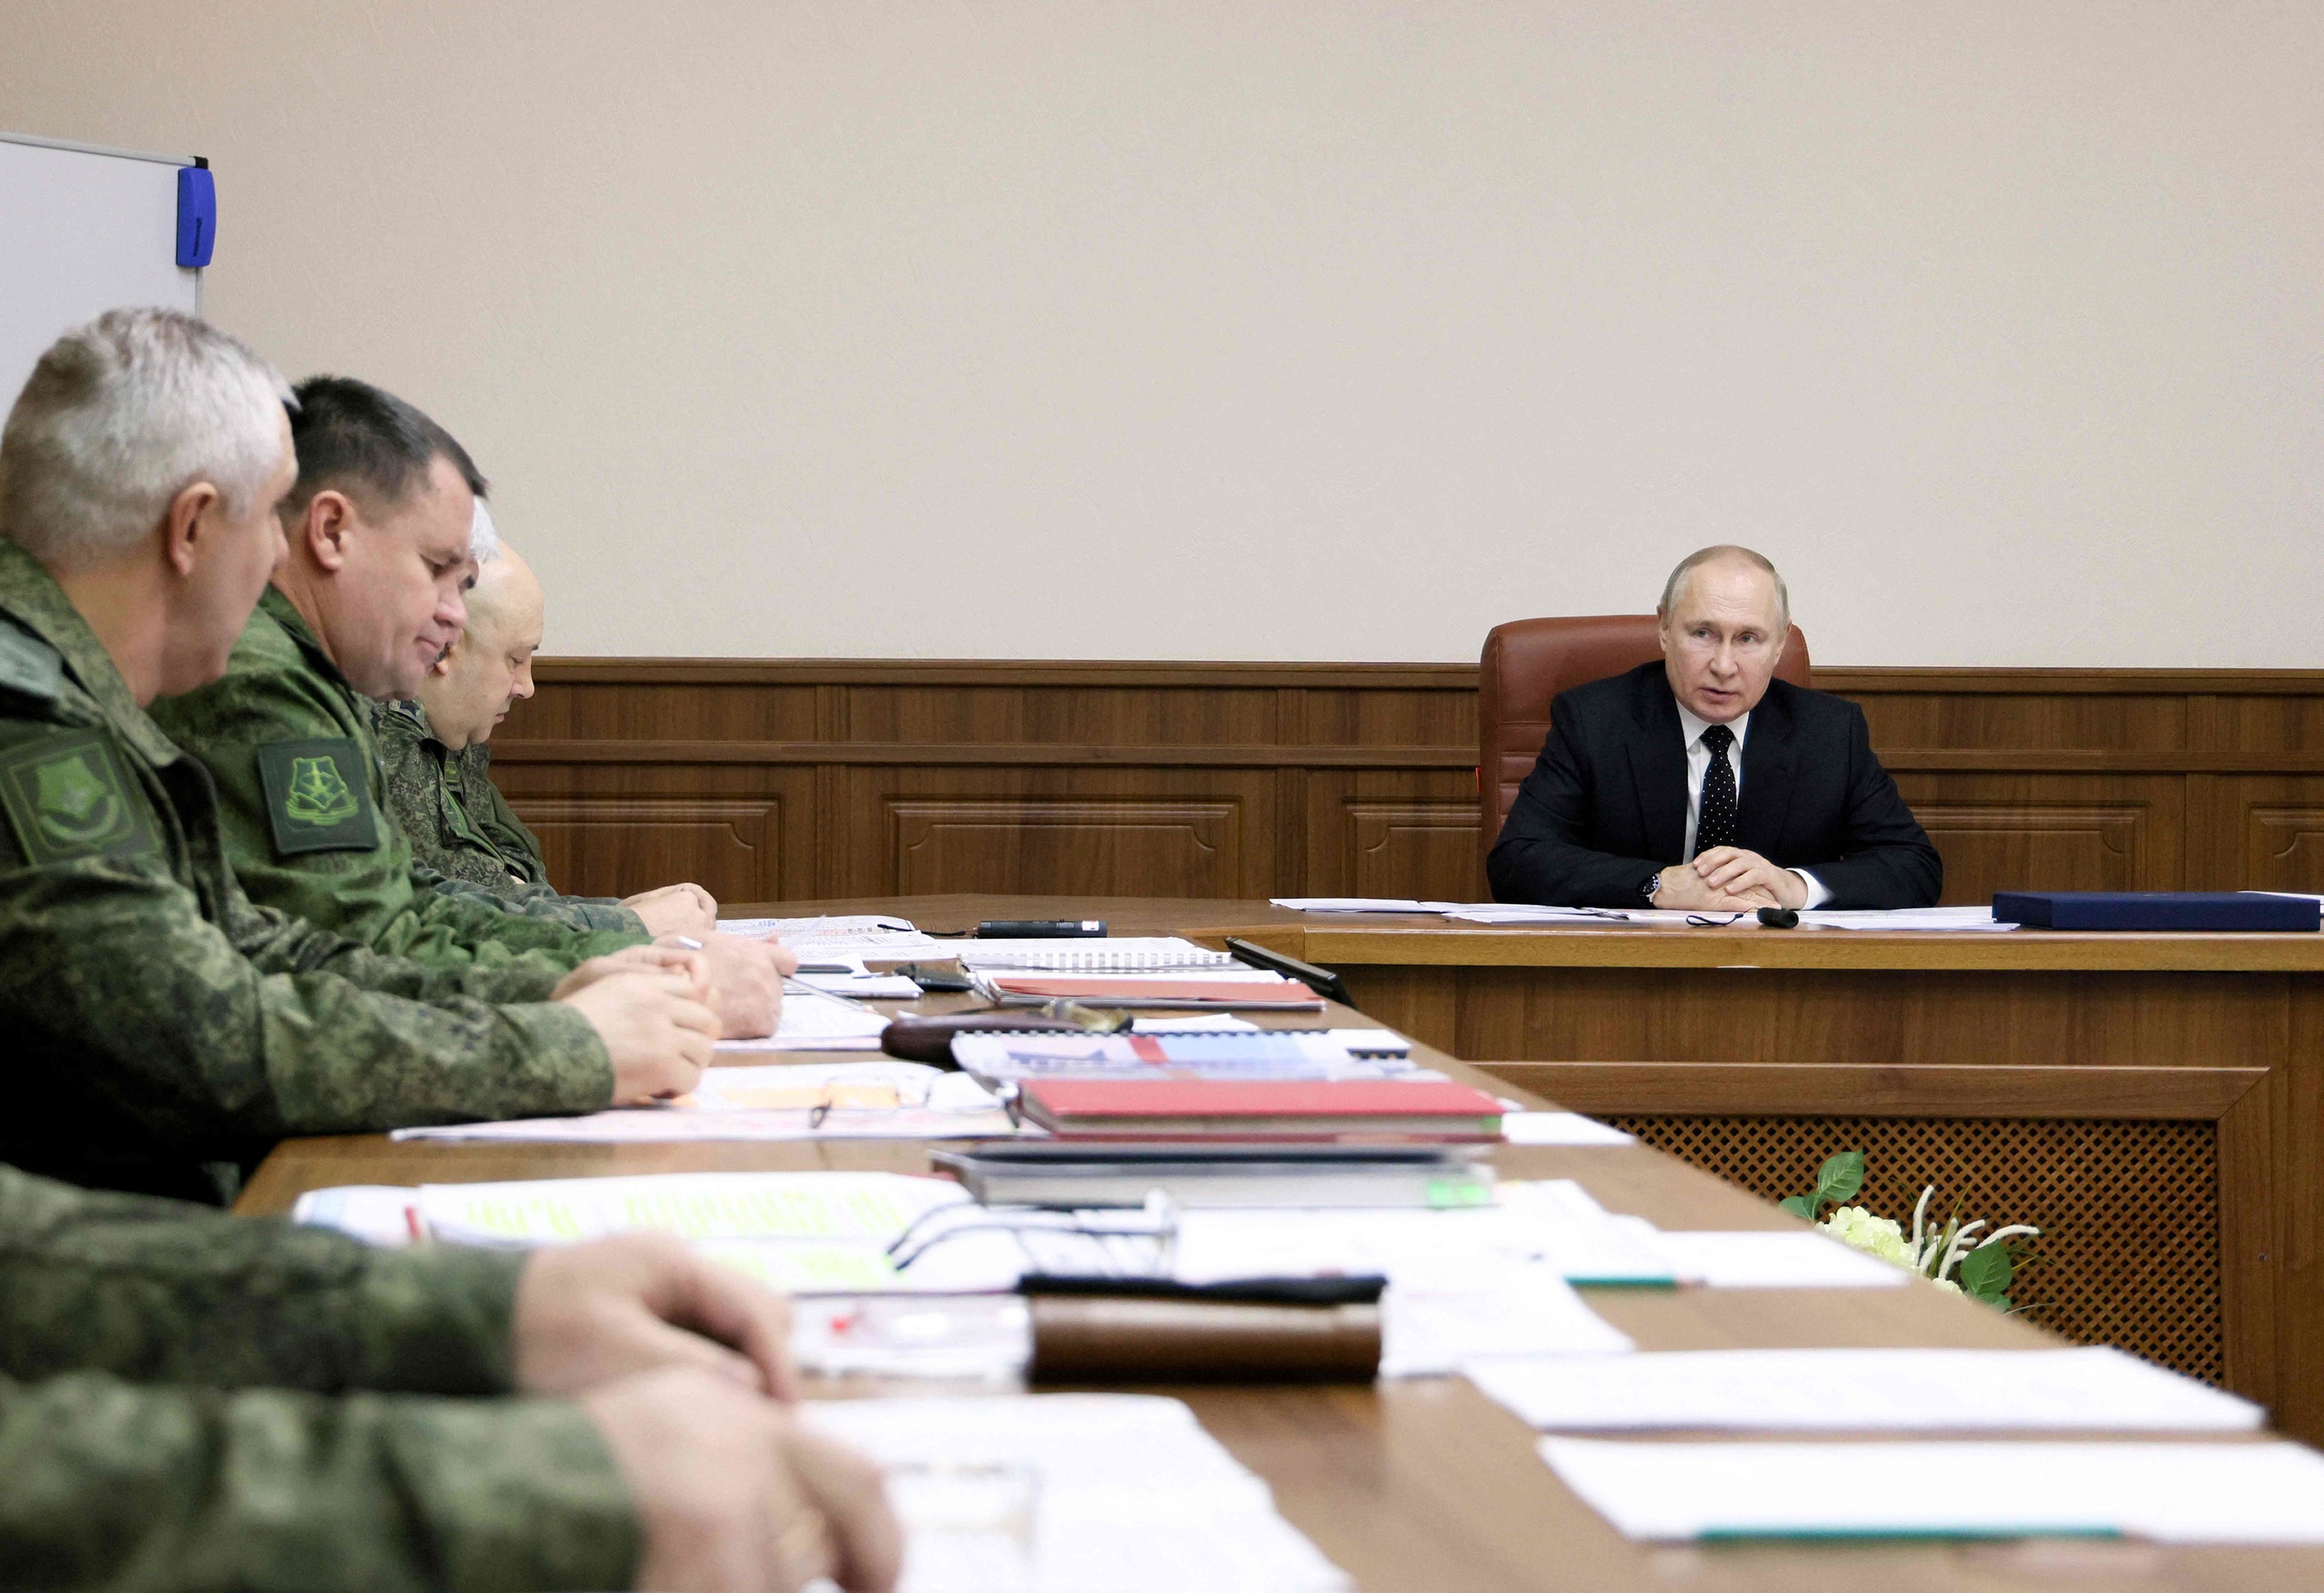 Vladimir Putin con soldados rusos de la guerra de Ucrania.